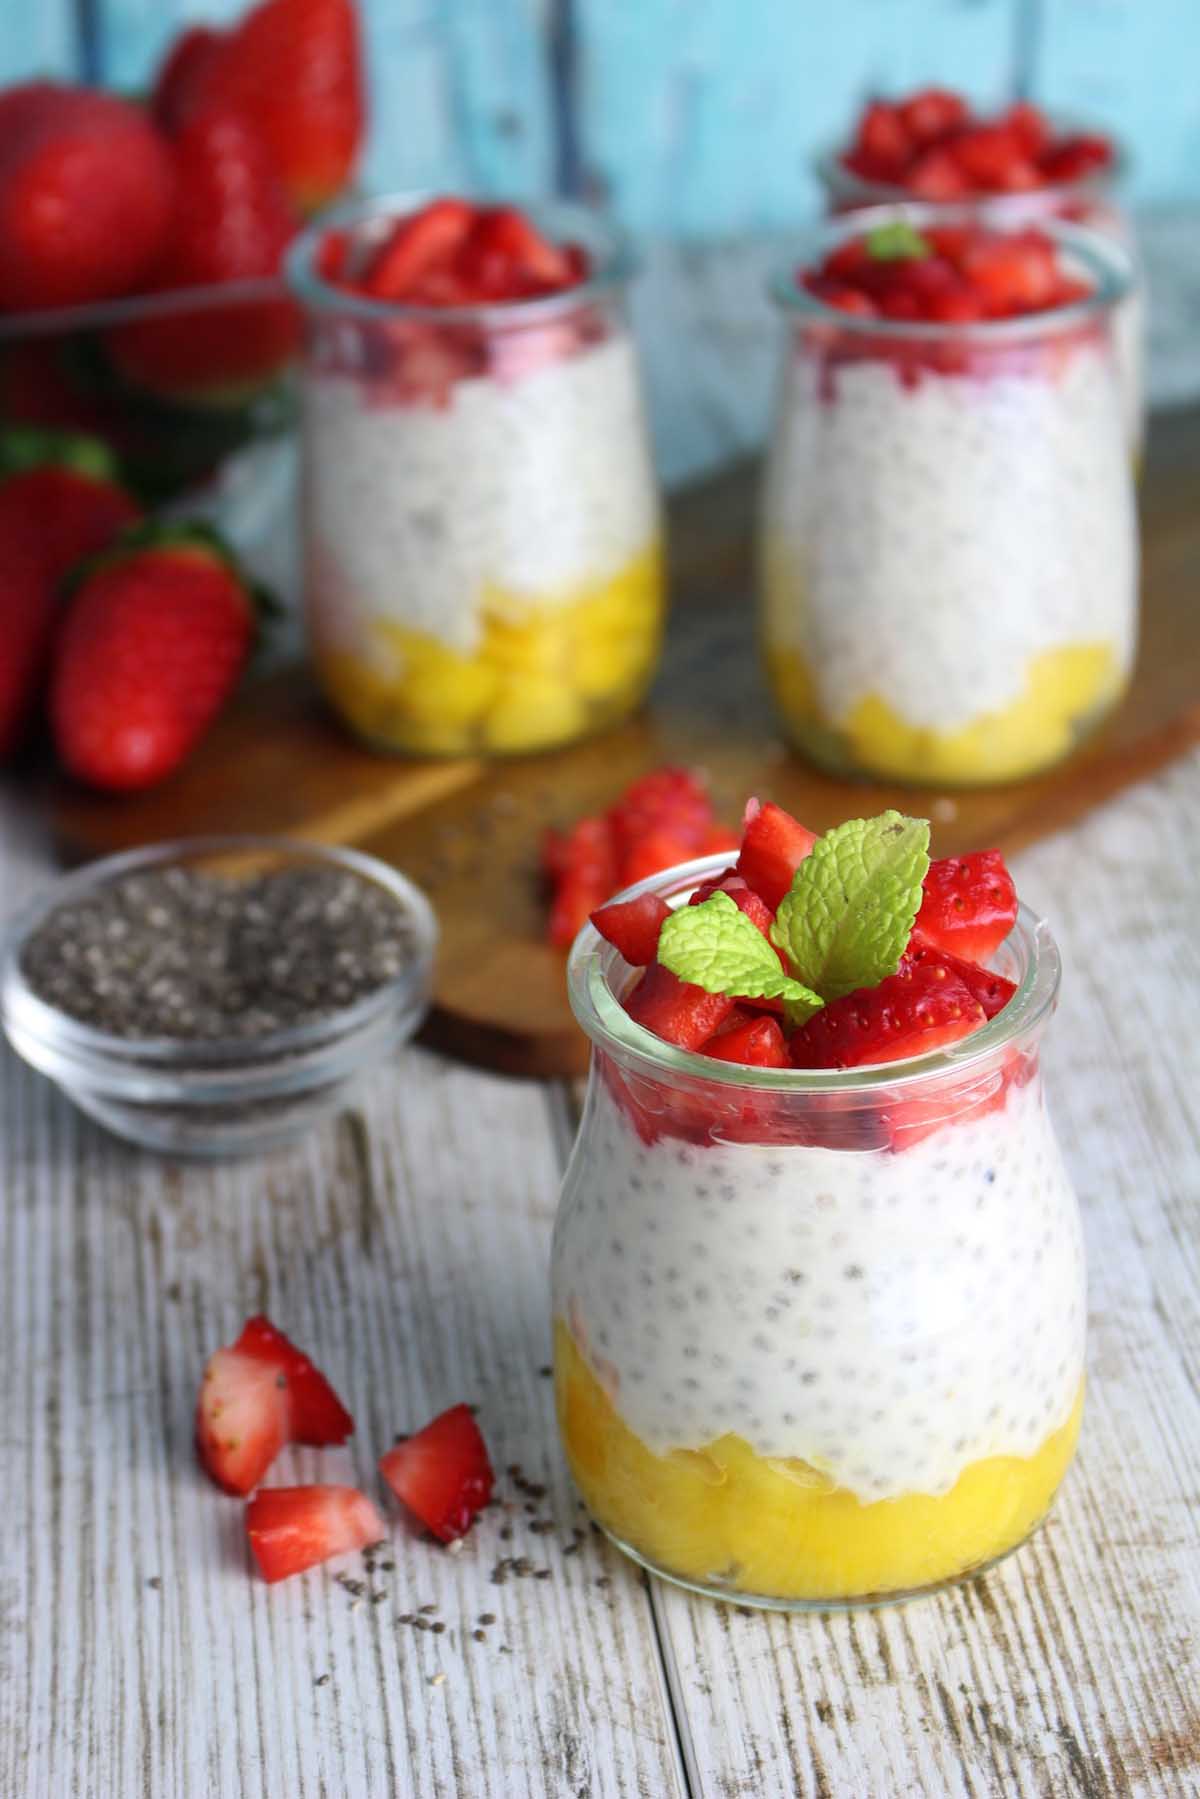 Pudding de chía con yogur sin lactosa, fresas y mango